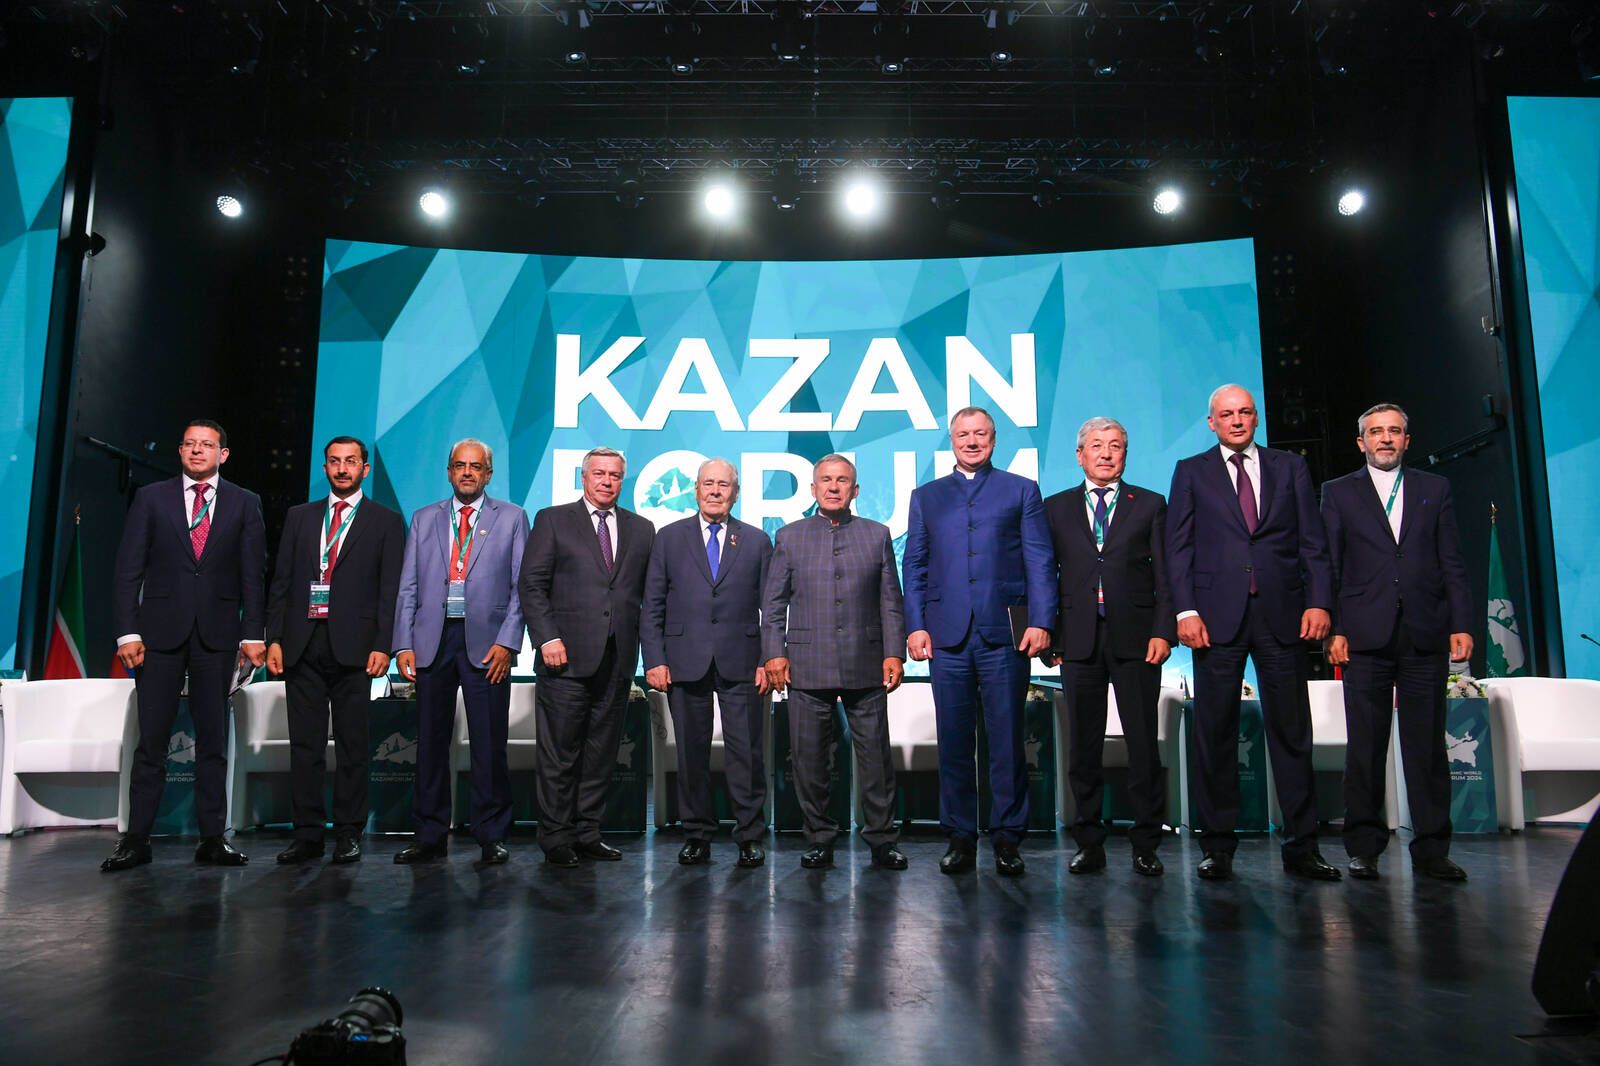 Марат Хуснуллин оценил успехи KazanForum